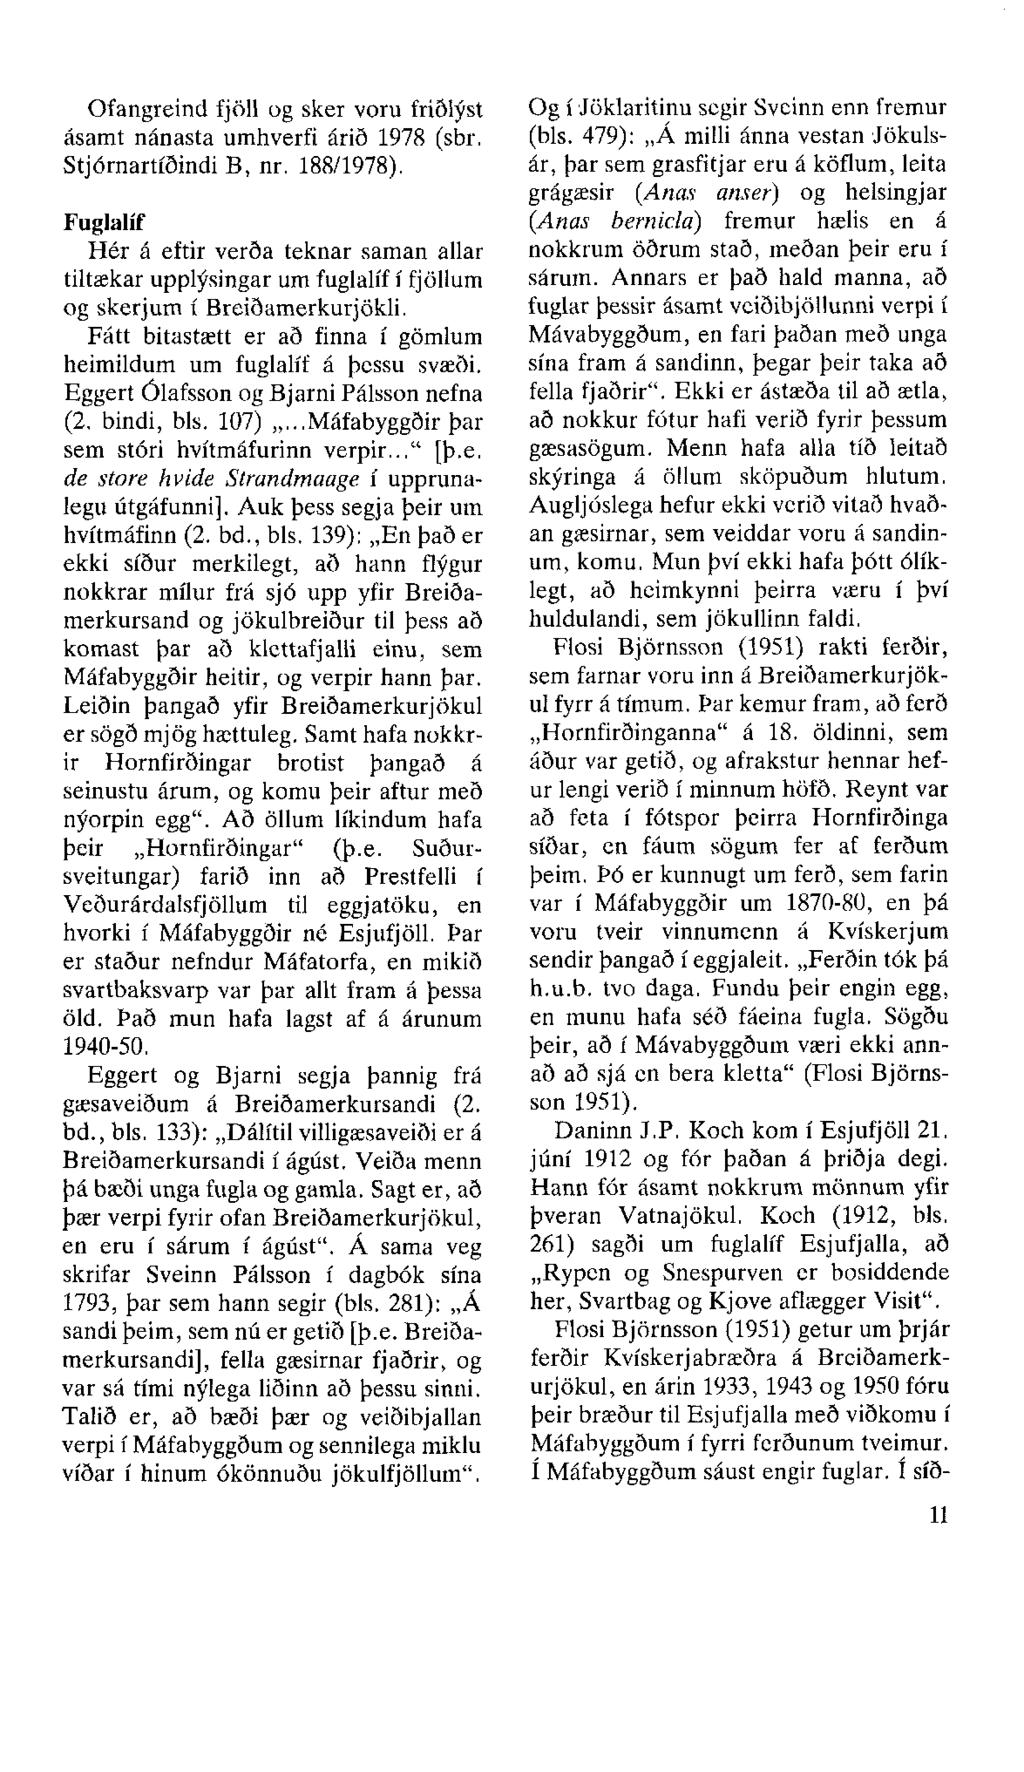 Ofangreind fjöll og sker voru friðlýst ásamt nánasta umhverfi árið 1978 (sbr. Stjórnartíðindi B, nr. 188/1978).